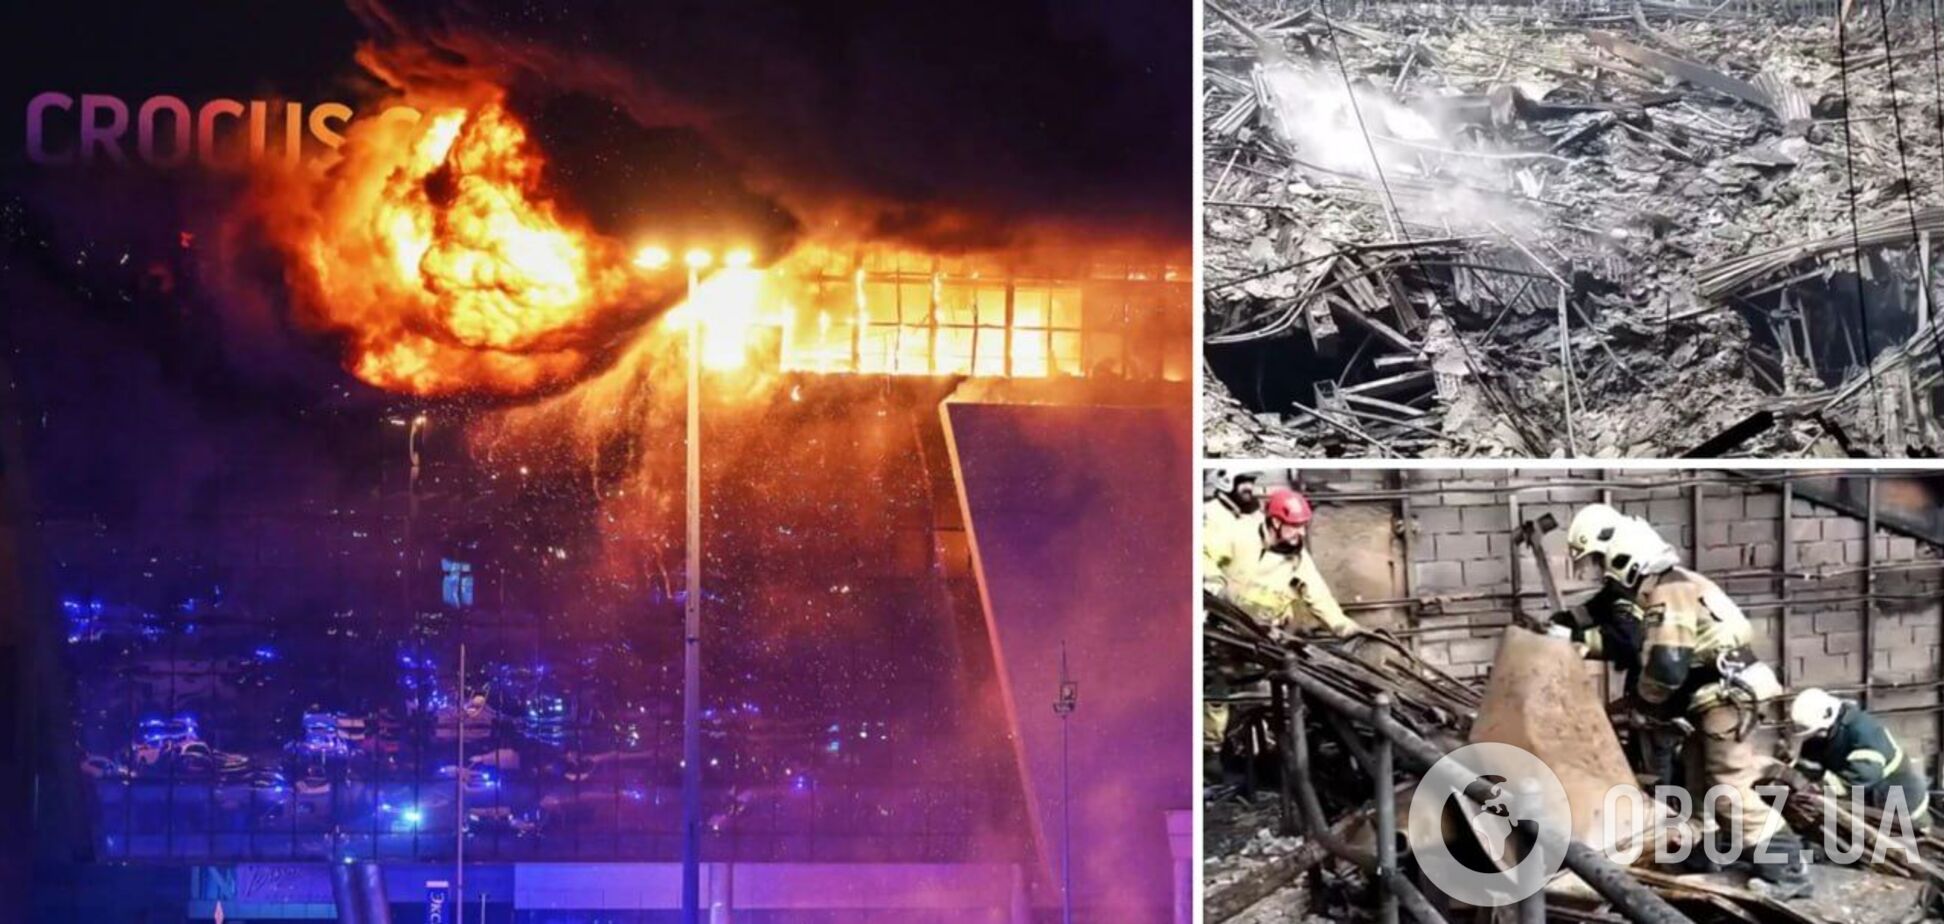 Сплошное пожарище: как выглядит 'Крокус Сити Холл' после теракта. Фото и видео